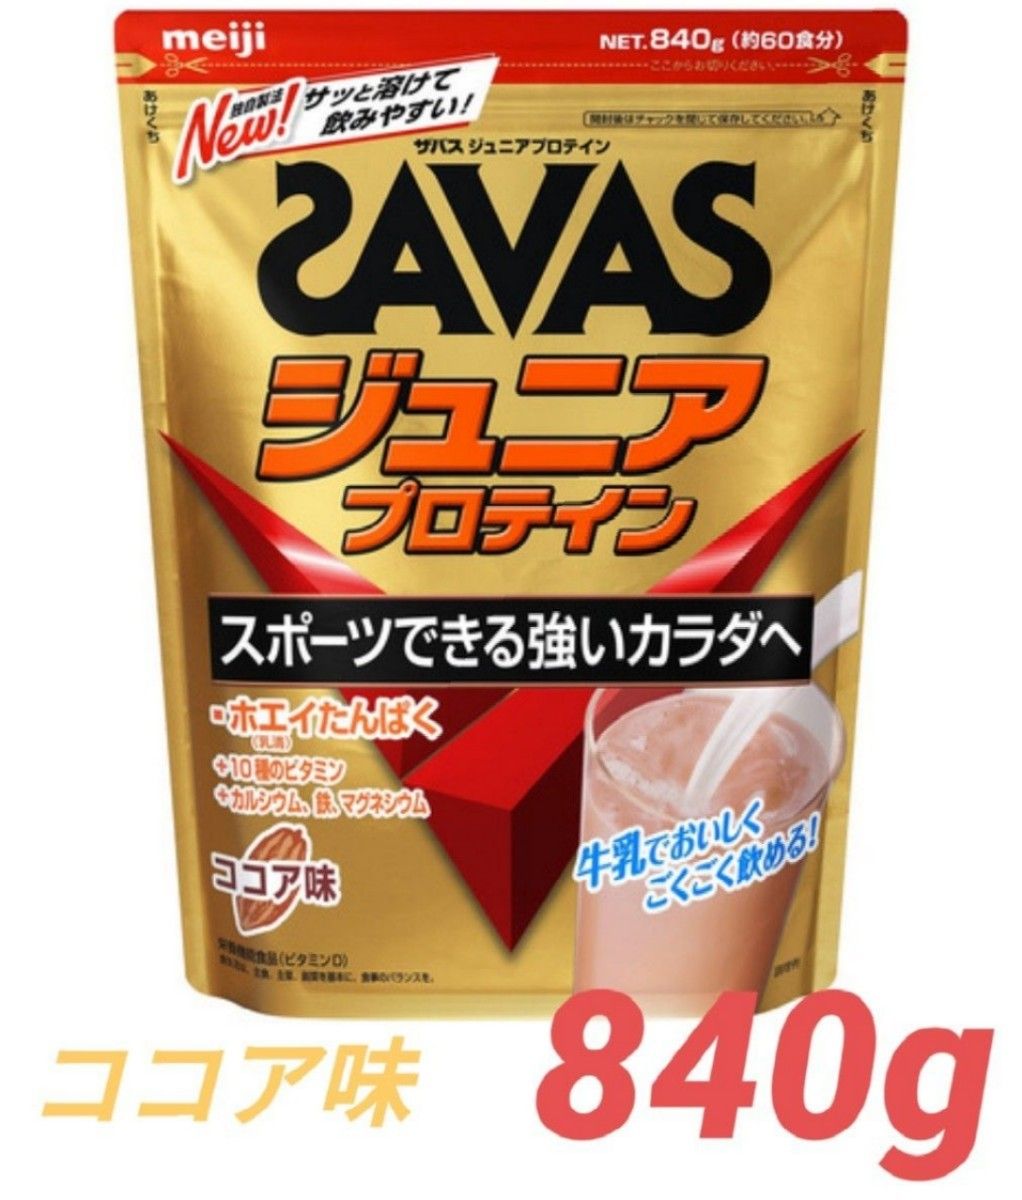 SAVAS ザバス ジュニアプロテイン ココア味 840g(約60食分)